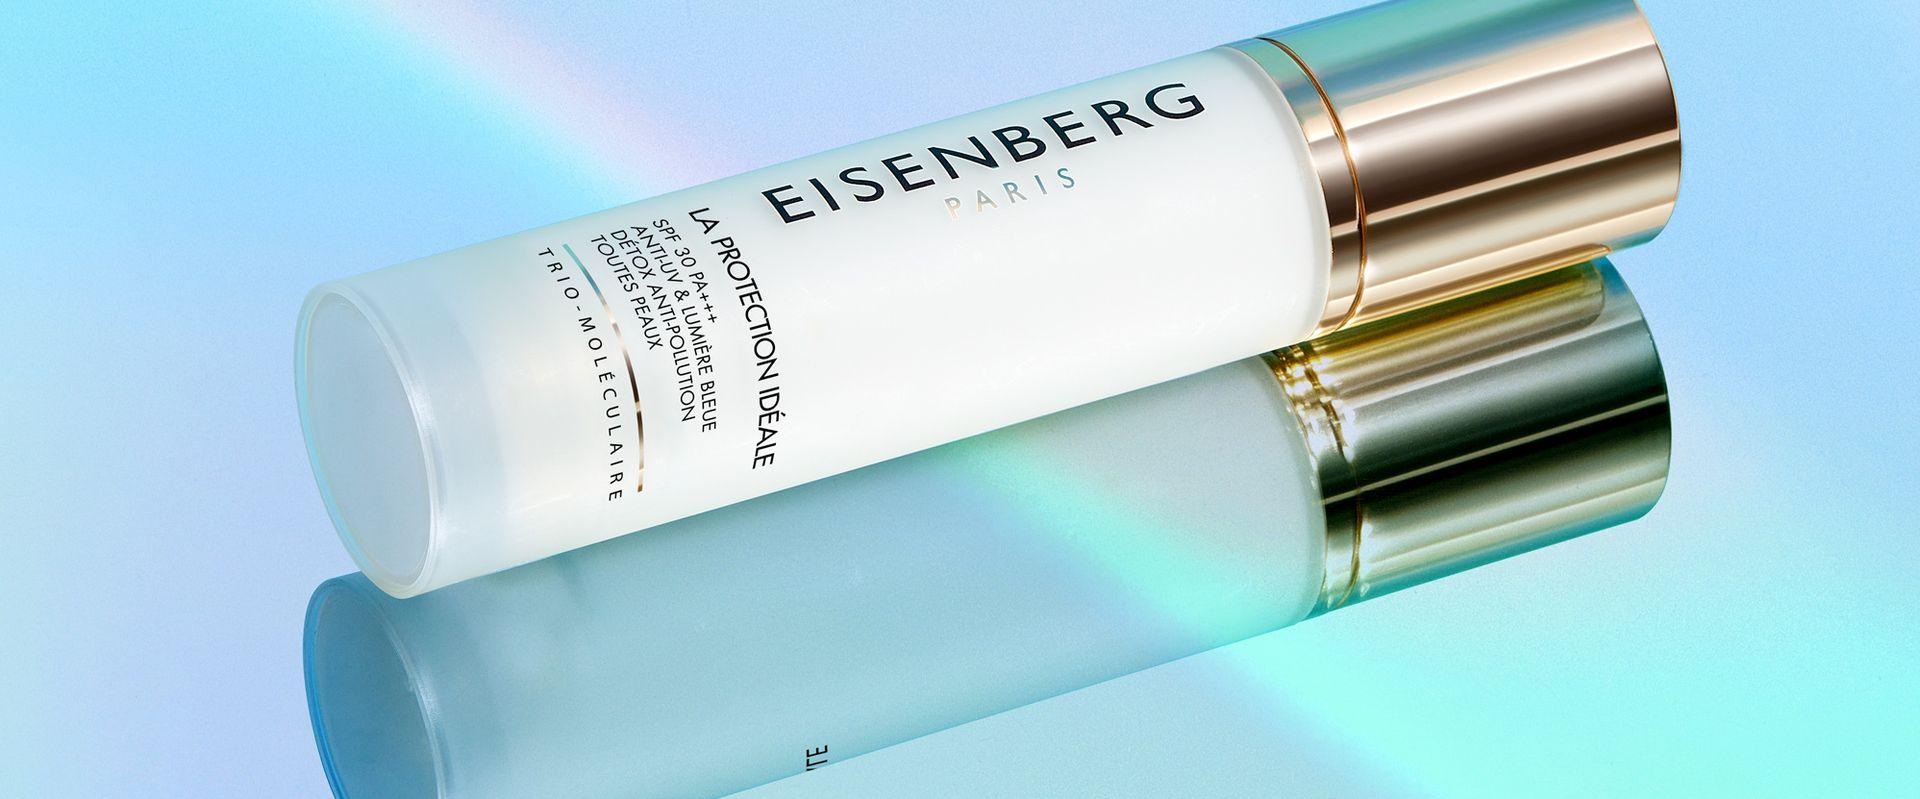 Eisenberg Paris Ideal Protection SPF 30 - jeden produkt przeciw promieniowaniu UV, ekspozycji na światło niebieskie oraz zanieczyszczeniom środowiskowym